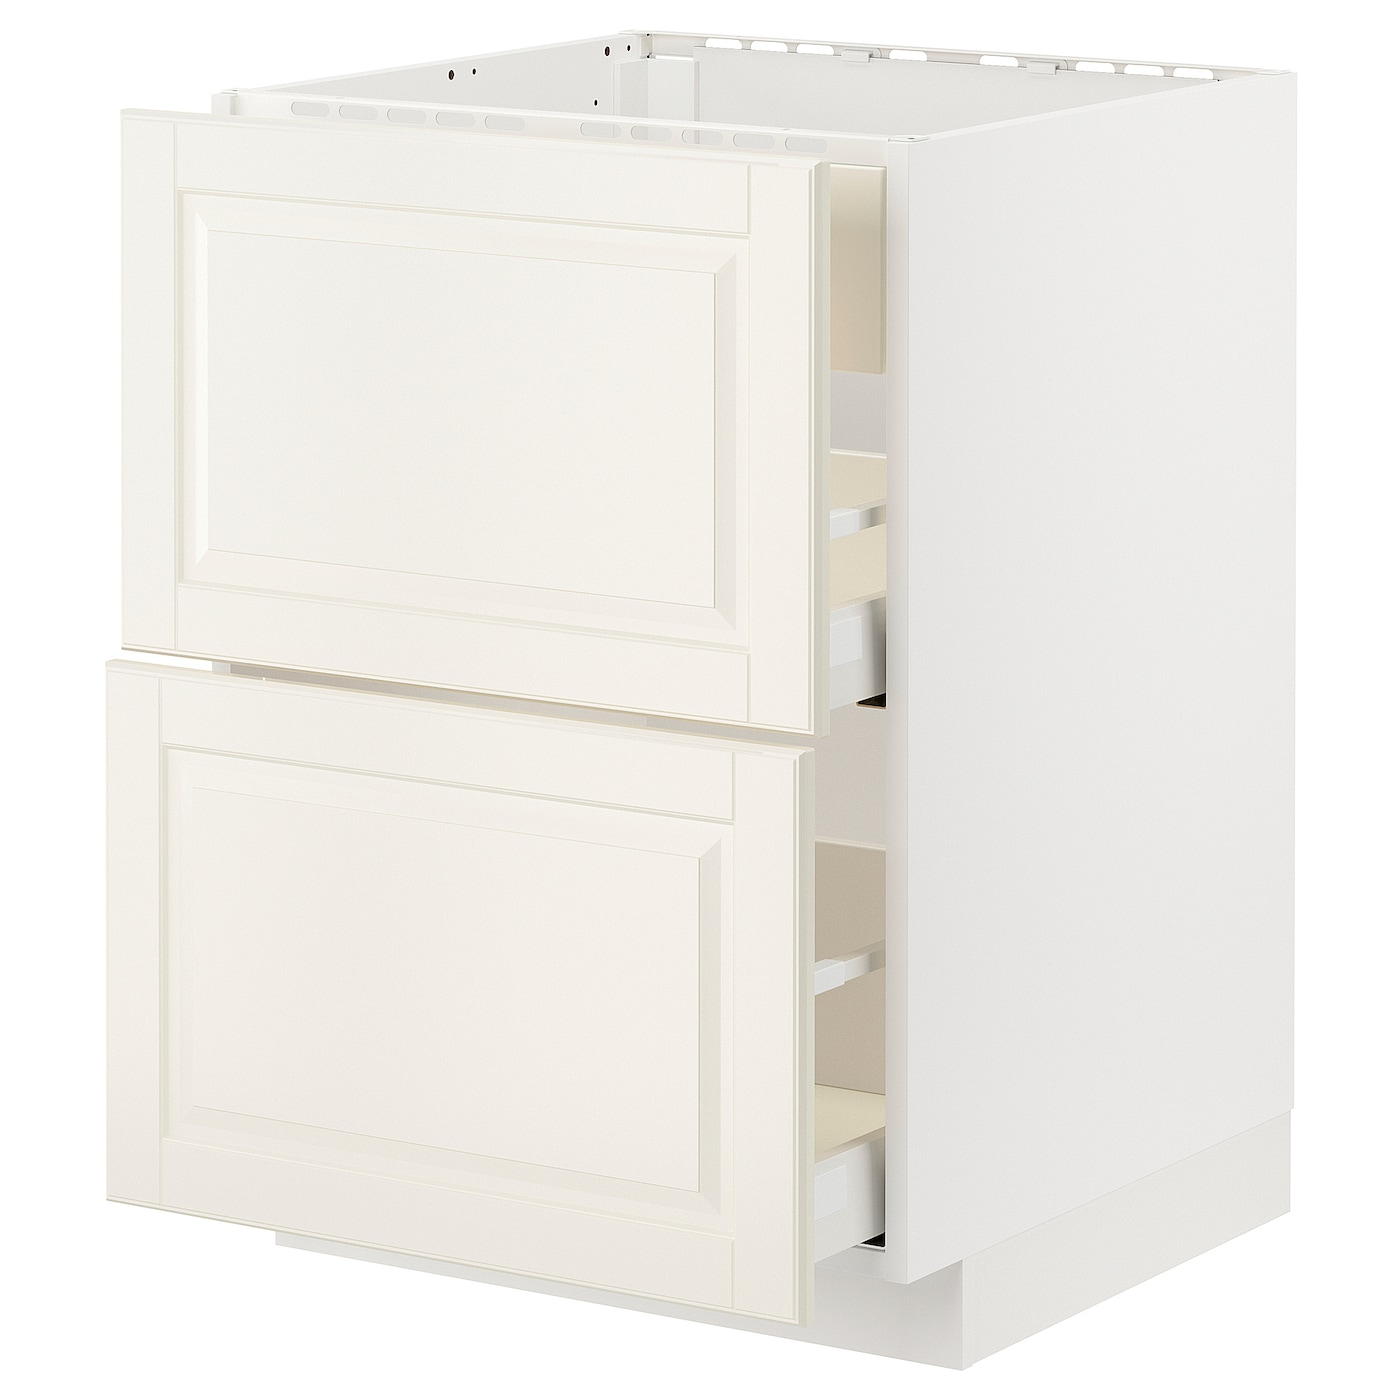 Напольный шкаф - METOD / MAXIMERA IKEA/ МЕТОД/ МАКСИМЕРА ИКЕА,  88х60 см, белый/светло-бежевый